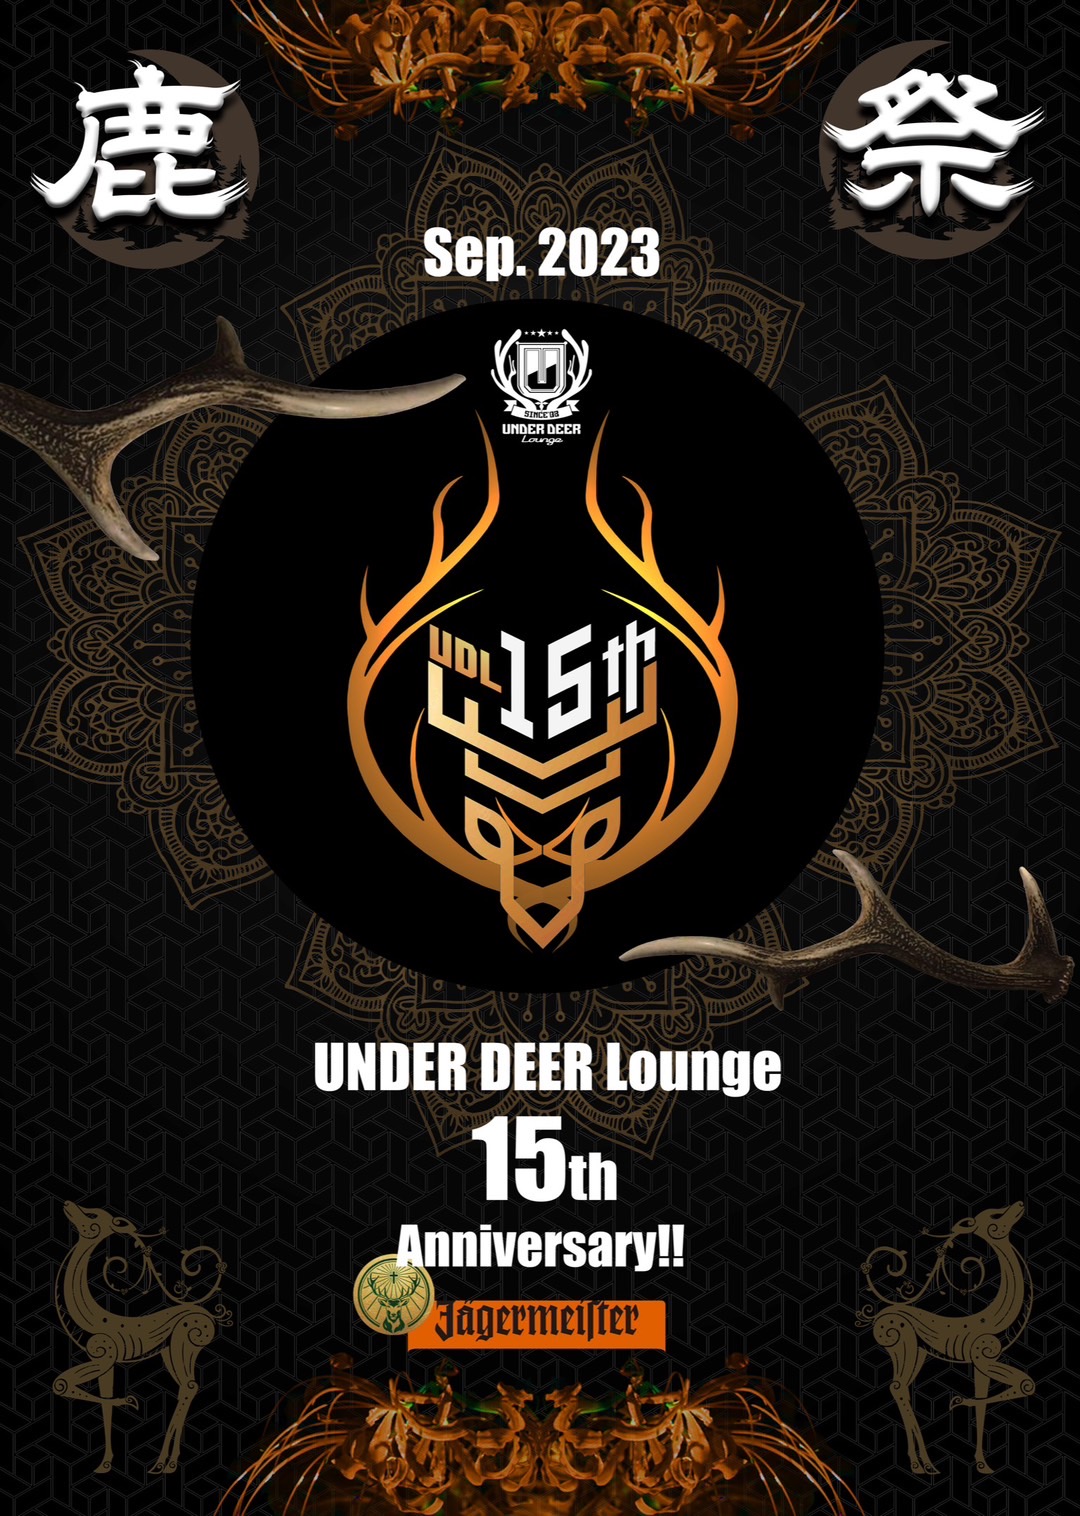 2023.9.29(fri) UNDER DEER Lounge 15th Anniversary!! “鹿祭” @渋谷UNDER DEER Lounge